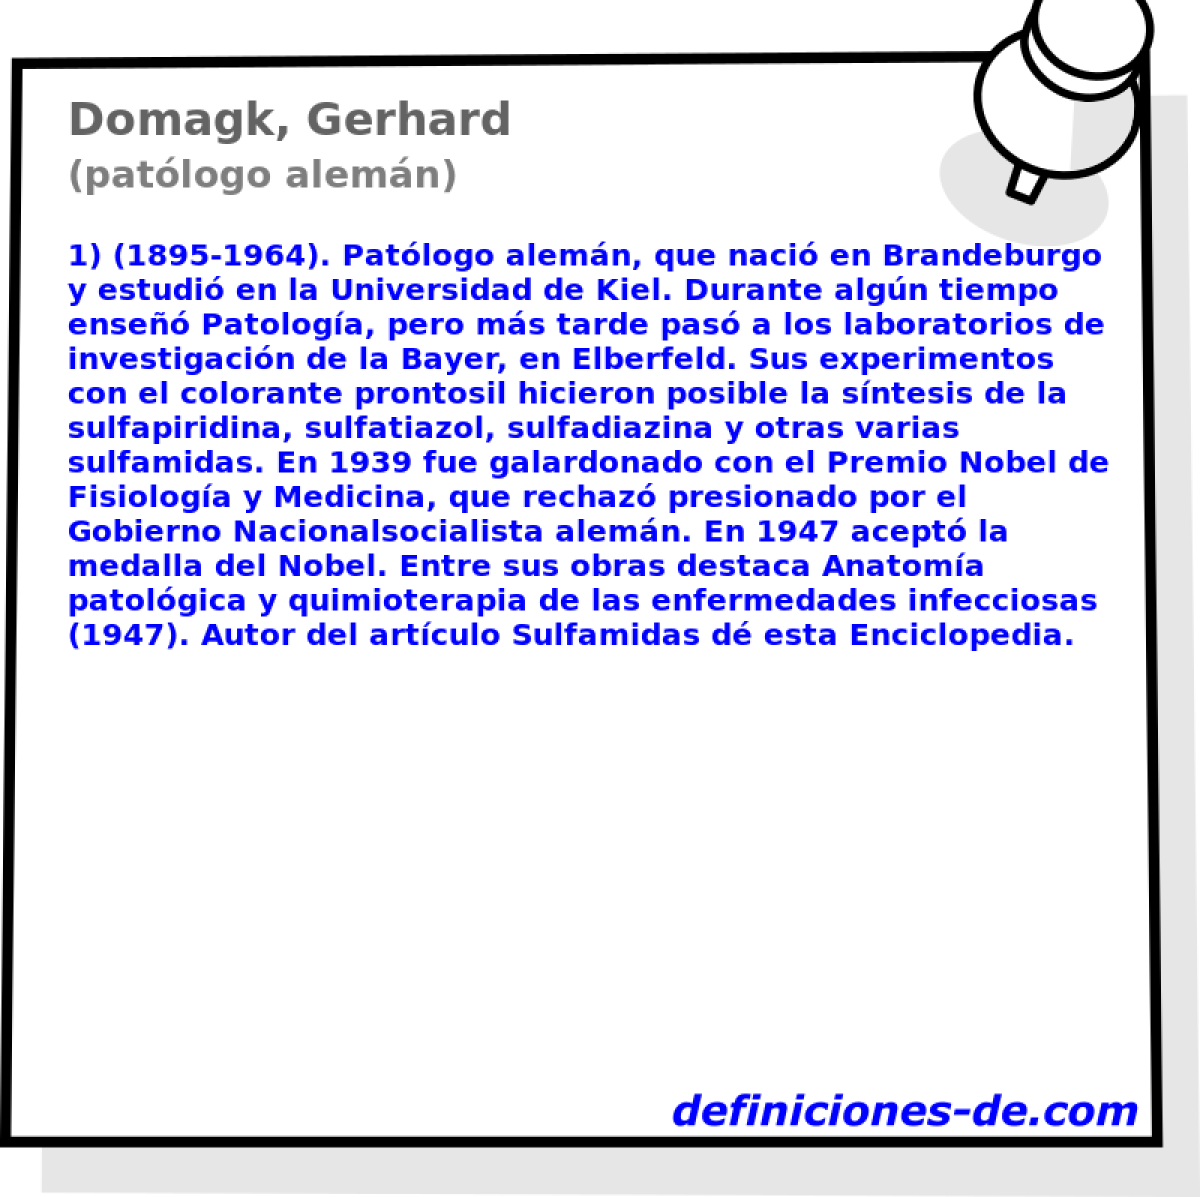 Domagk, Gerhard (patlogo alemn)